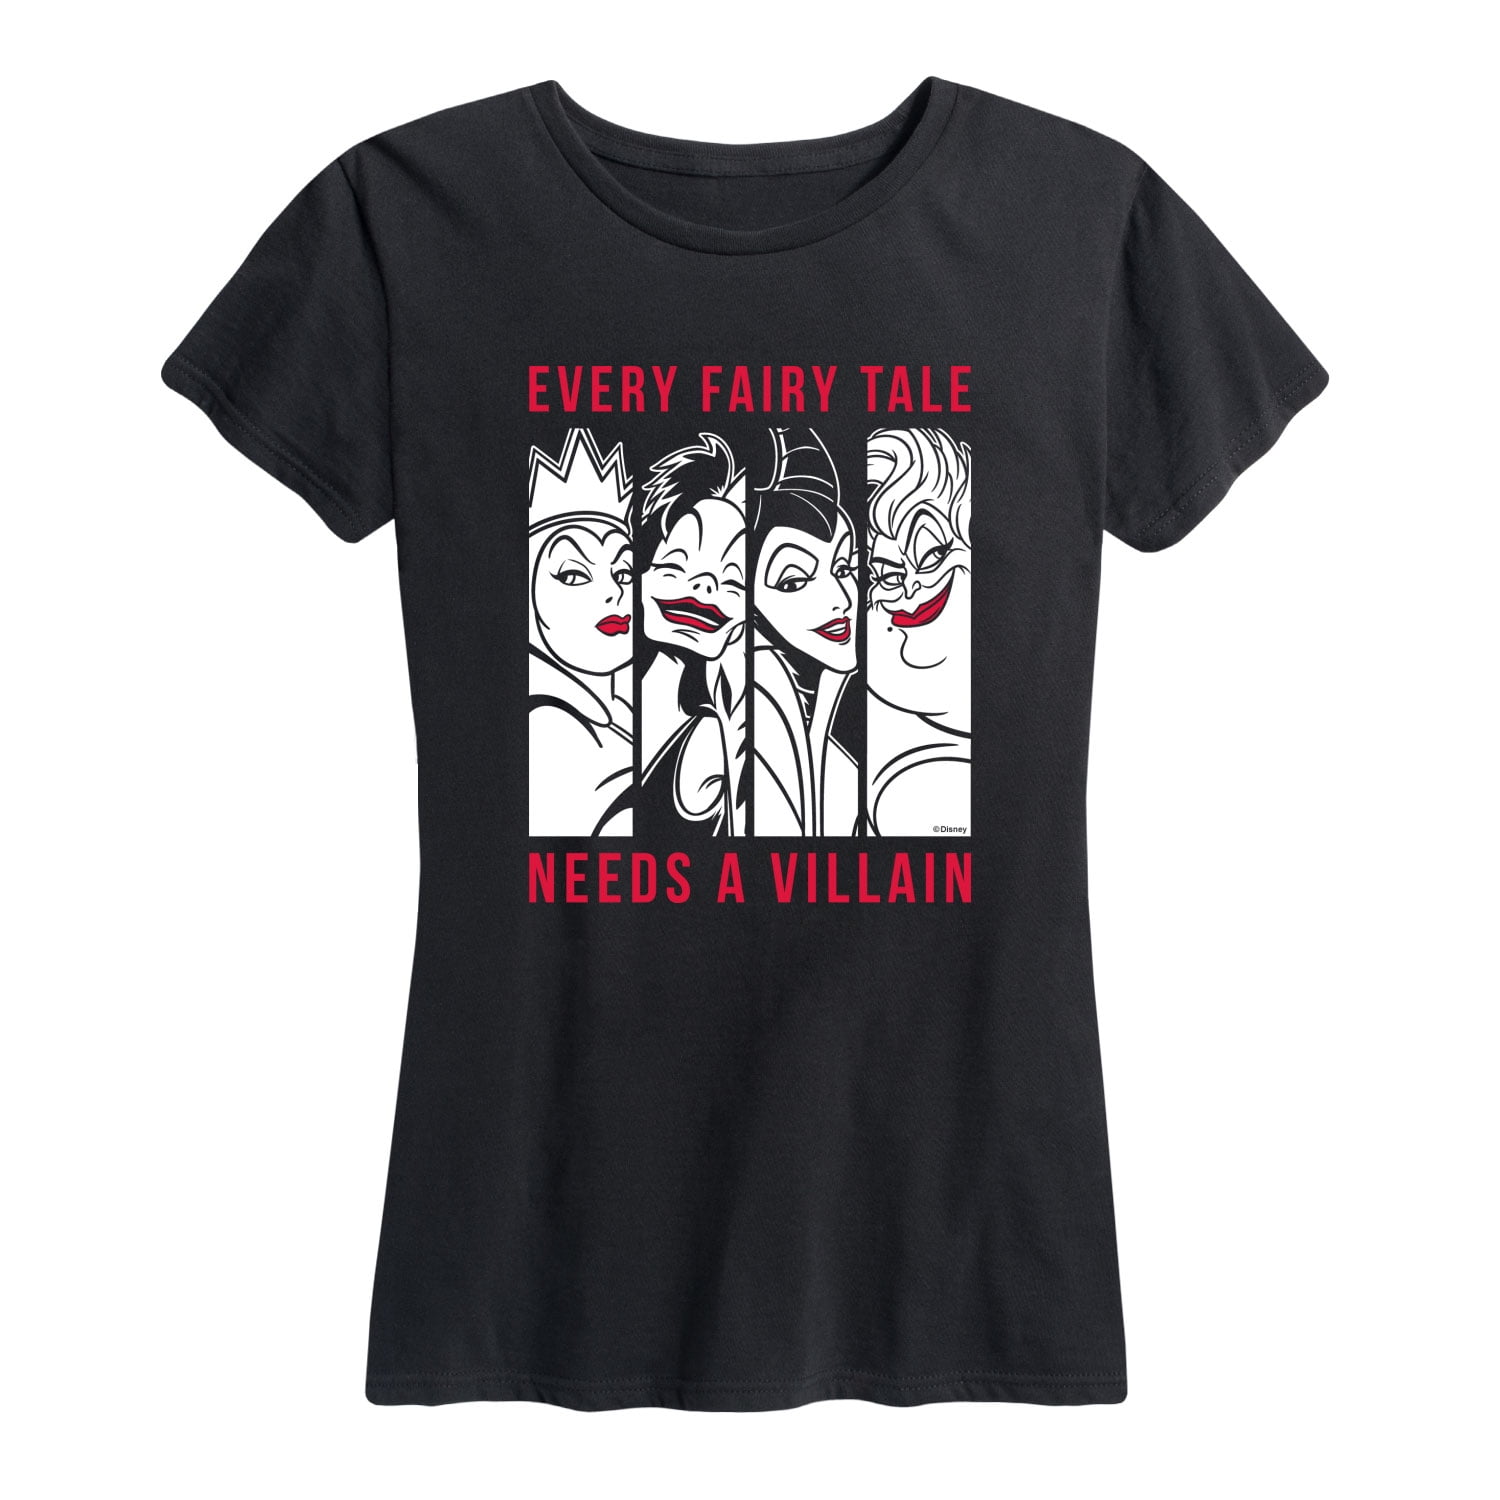 A Sleeve Women\'s - T-Shirt Short Tale Needs - Fairy Villian Disney Graphic Every Villains